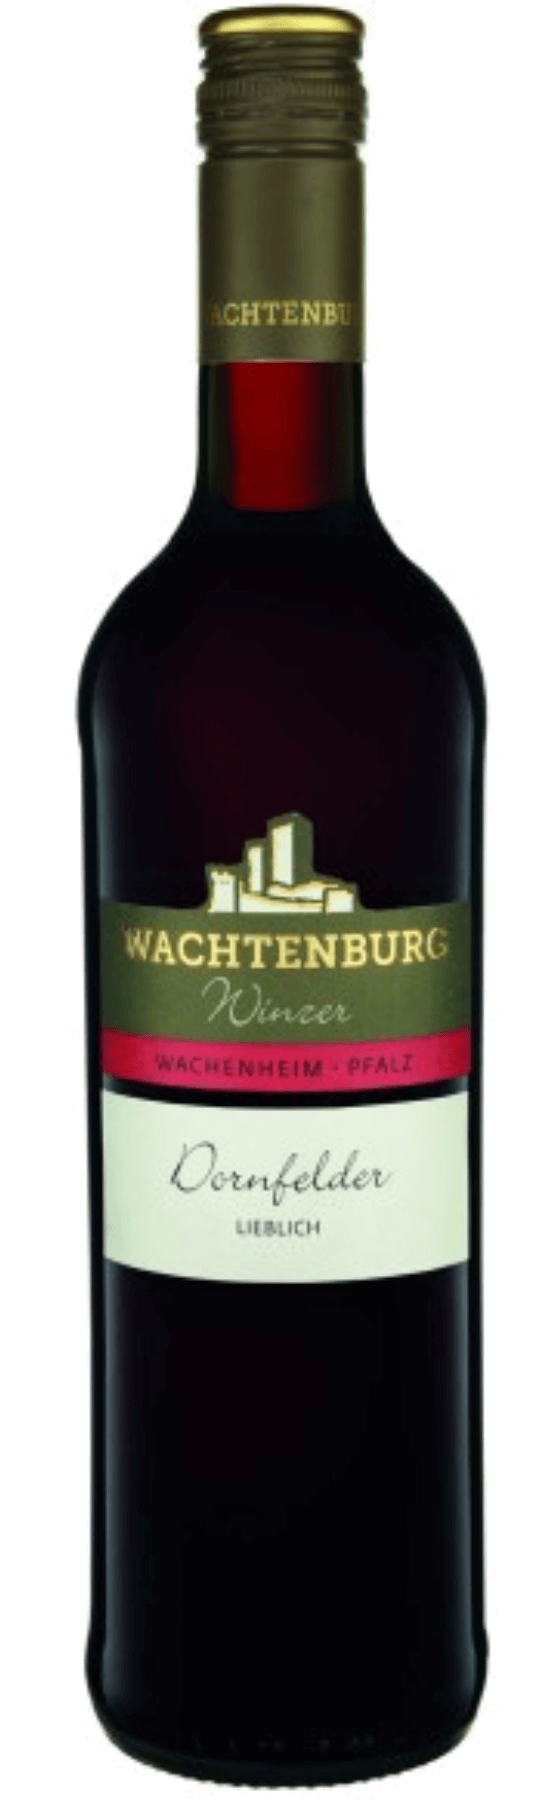 Wachtenburg Dornfelder lieblich Winzerstolz